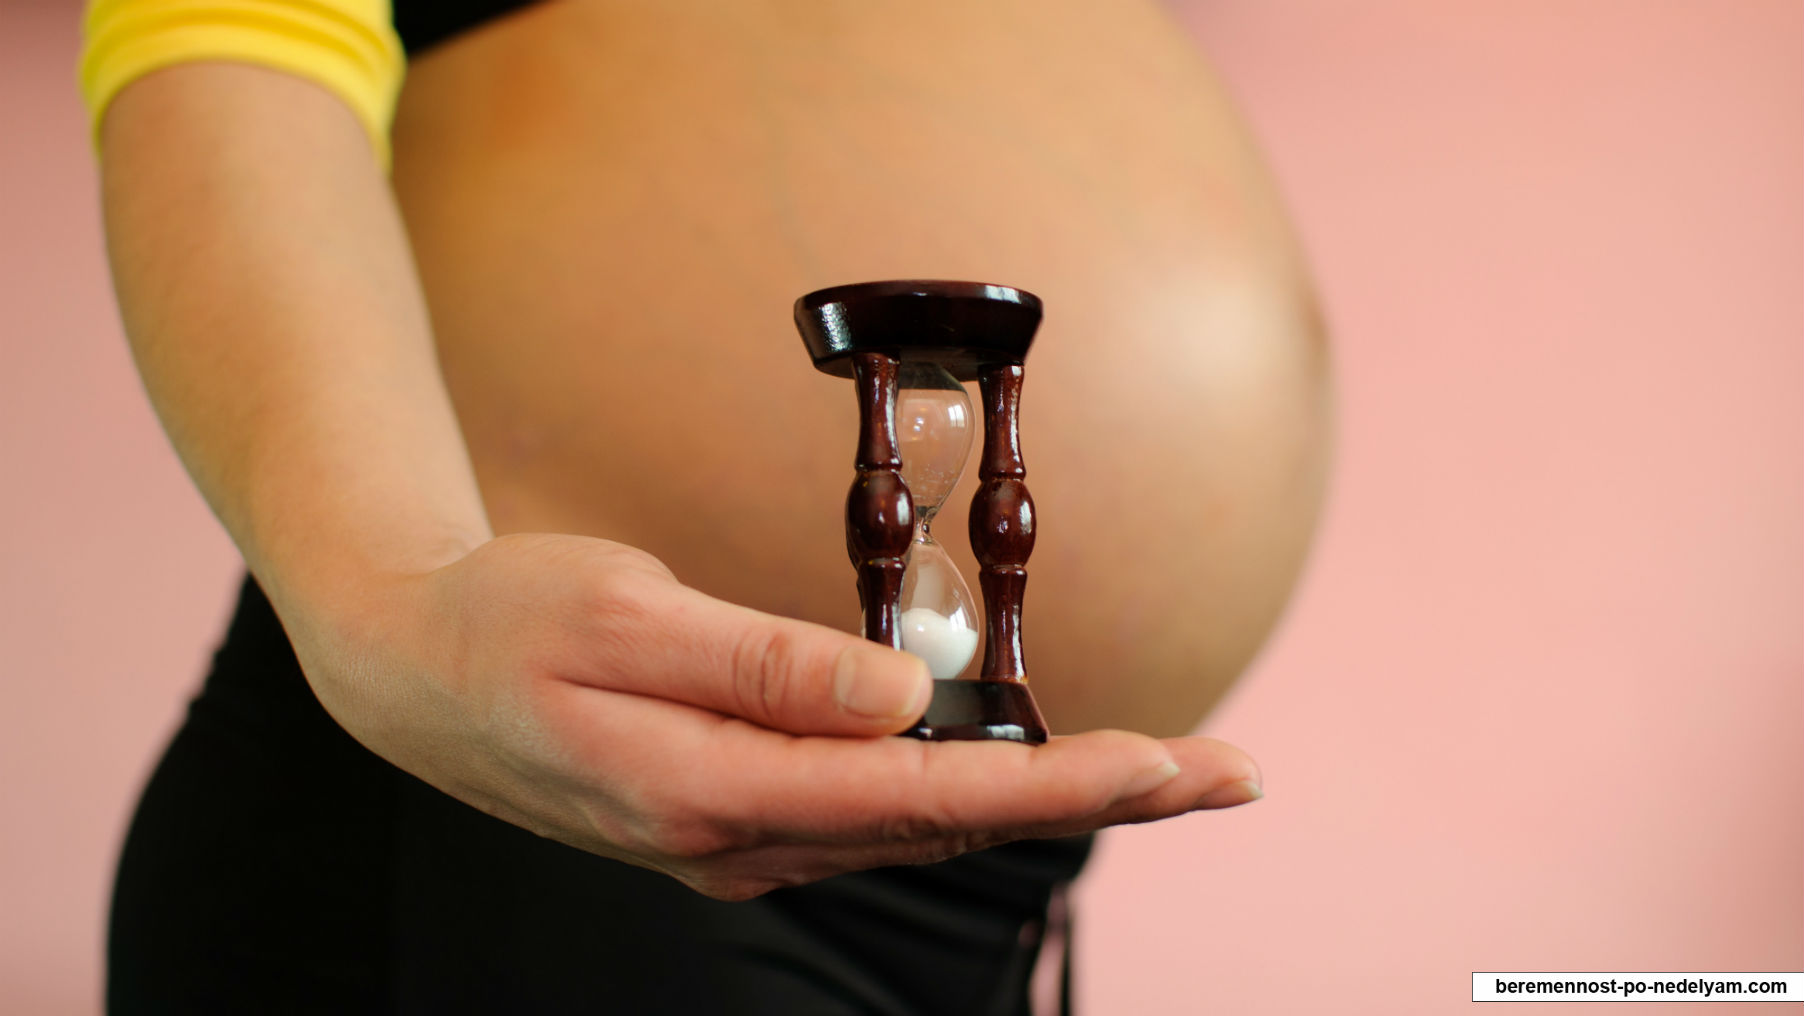 Противопоказания для беременности после 40